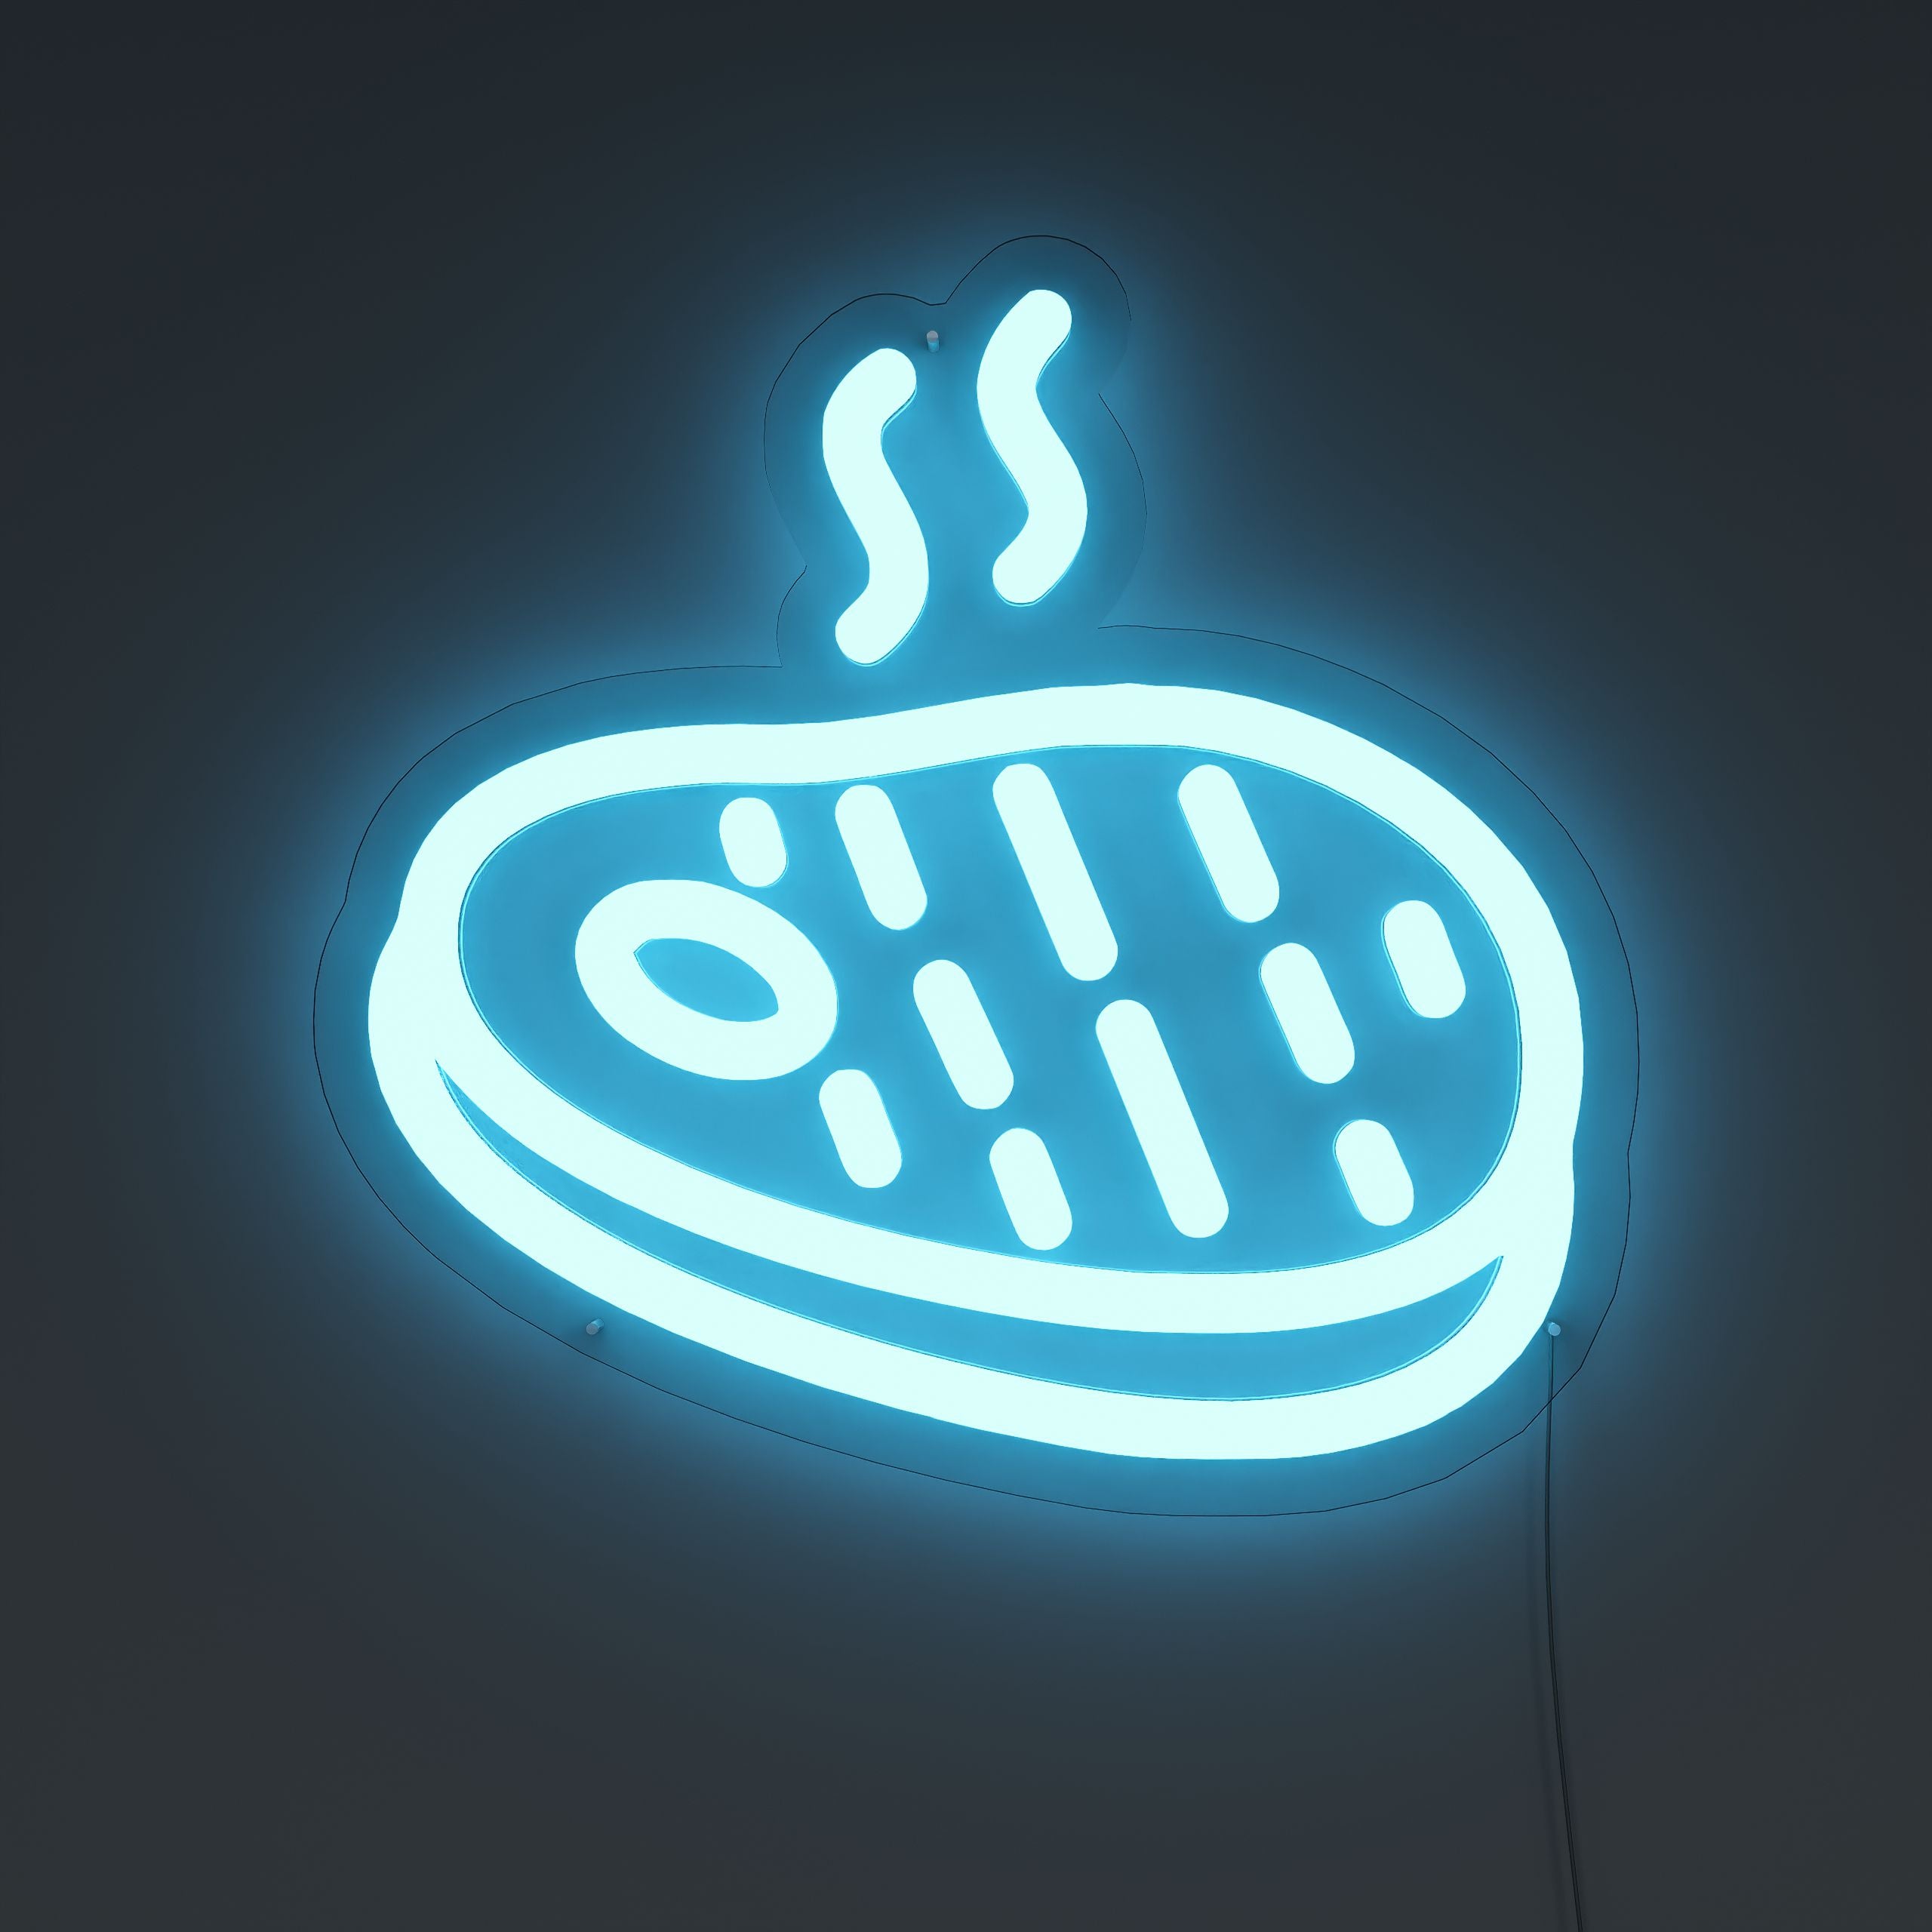 Hot-Grill-Steak-Neon-Sign-Lite